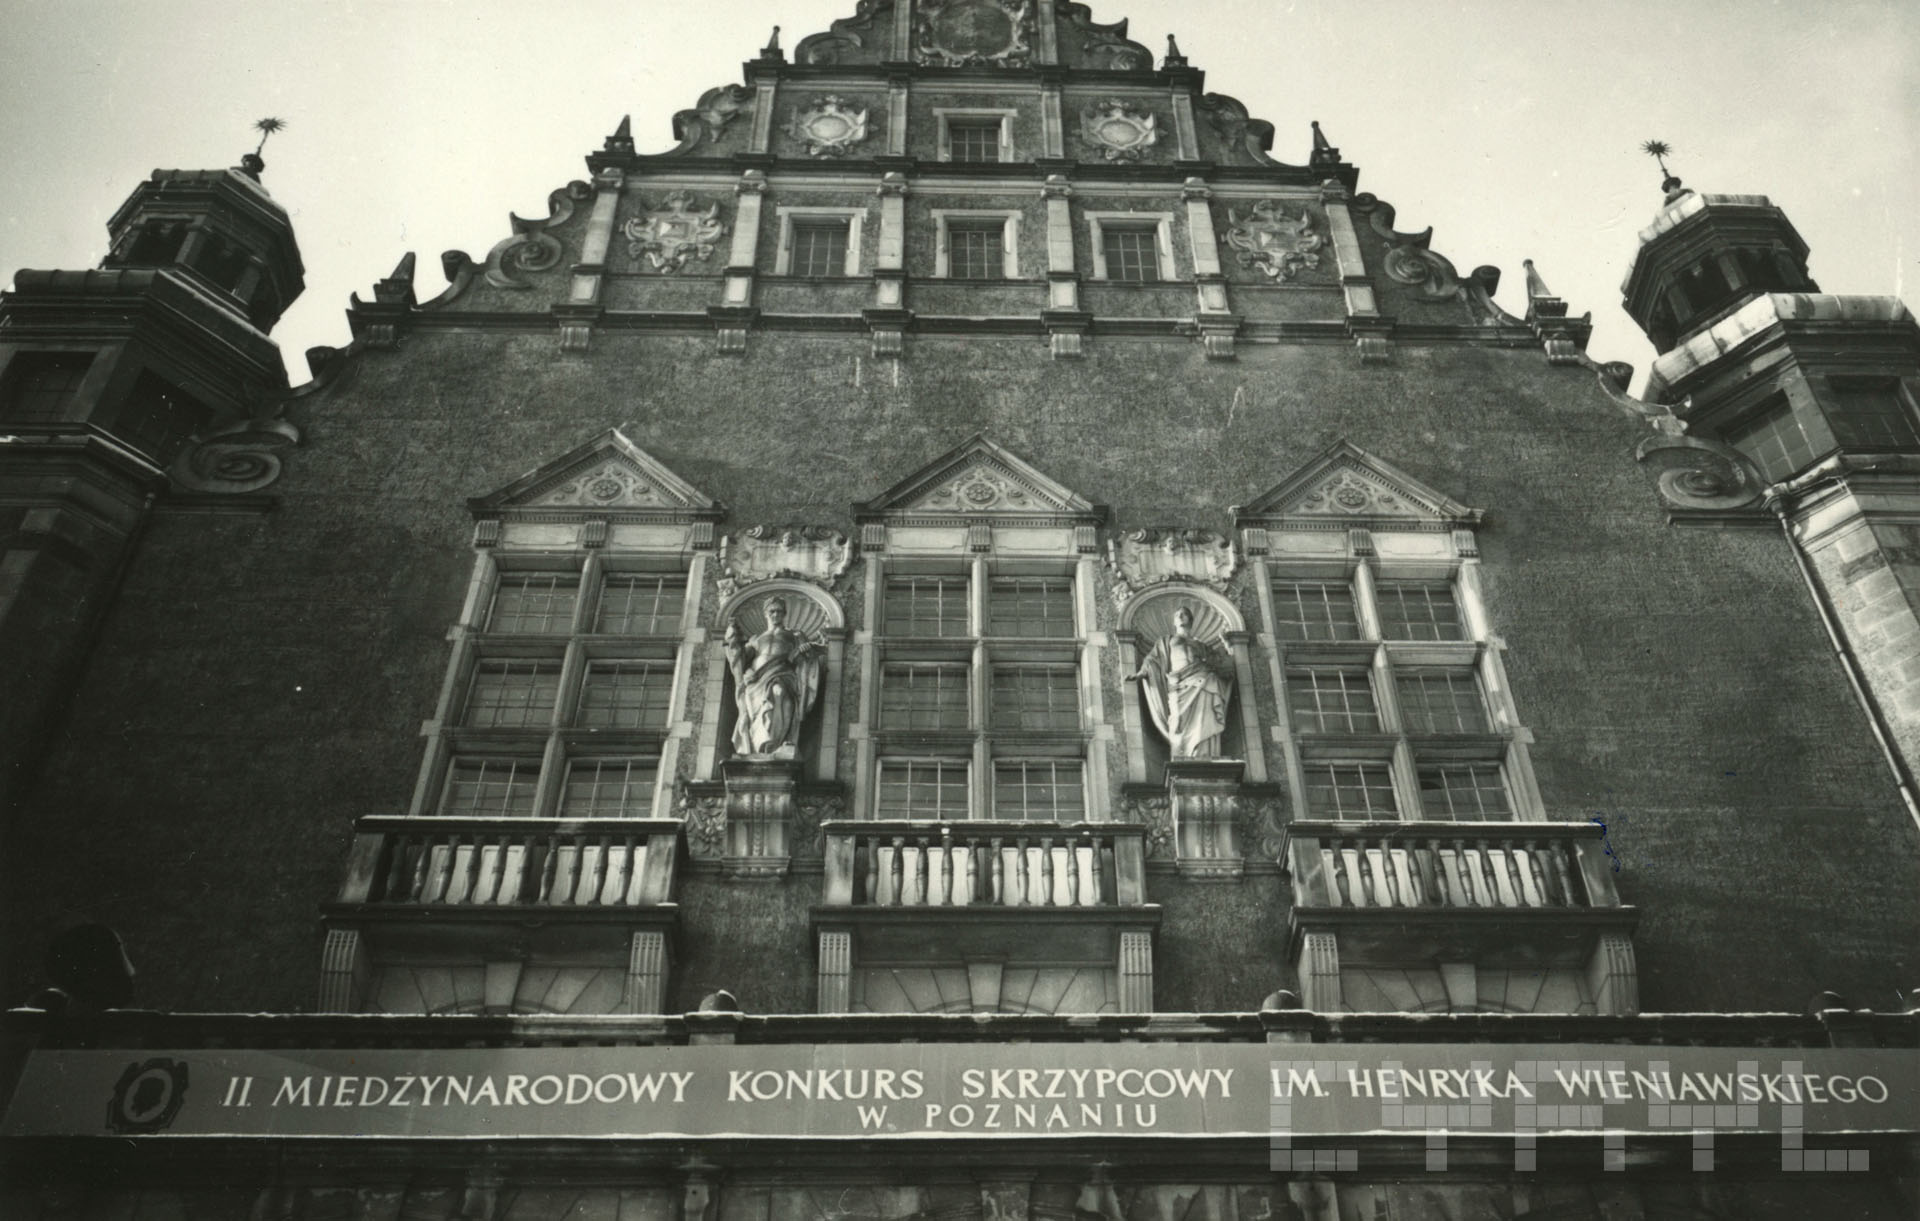 II Międzynarodowy Konkurs Skrzypcowy im. Henryka Wieniawskiego | 1952 | Towarzystwo Muzyczne im. H. Wieniawskiego w Poznaniu